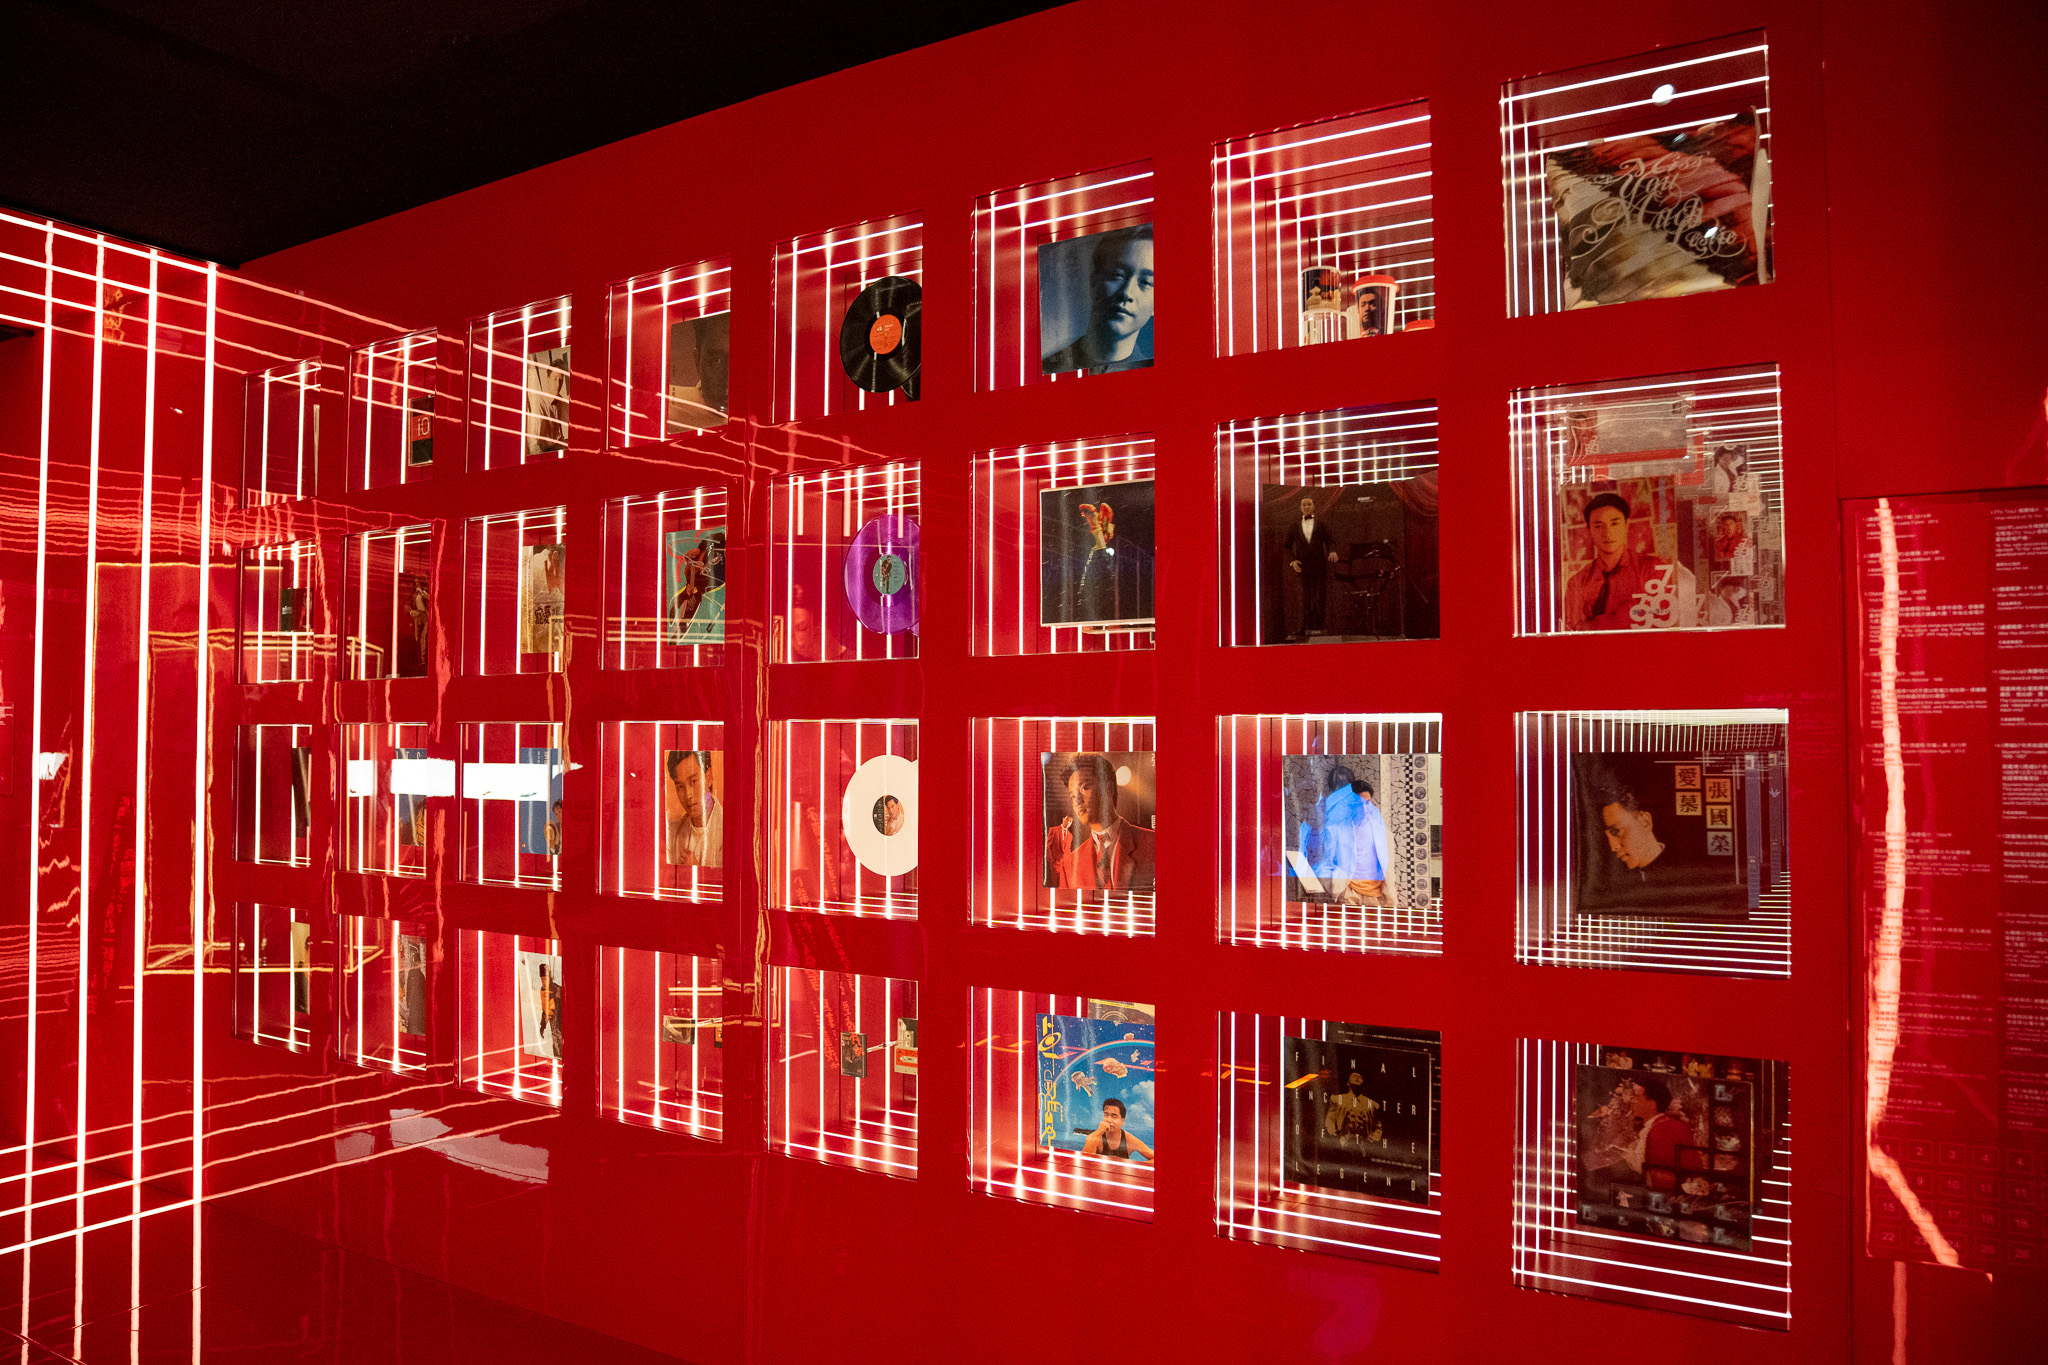 「音樂區」展出了當年張國榮的卡式錄音帶及黑膠唱片等1980年代的流行文化產物。 